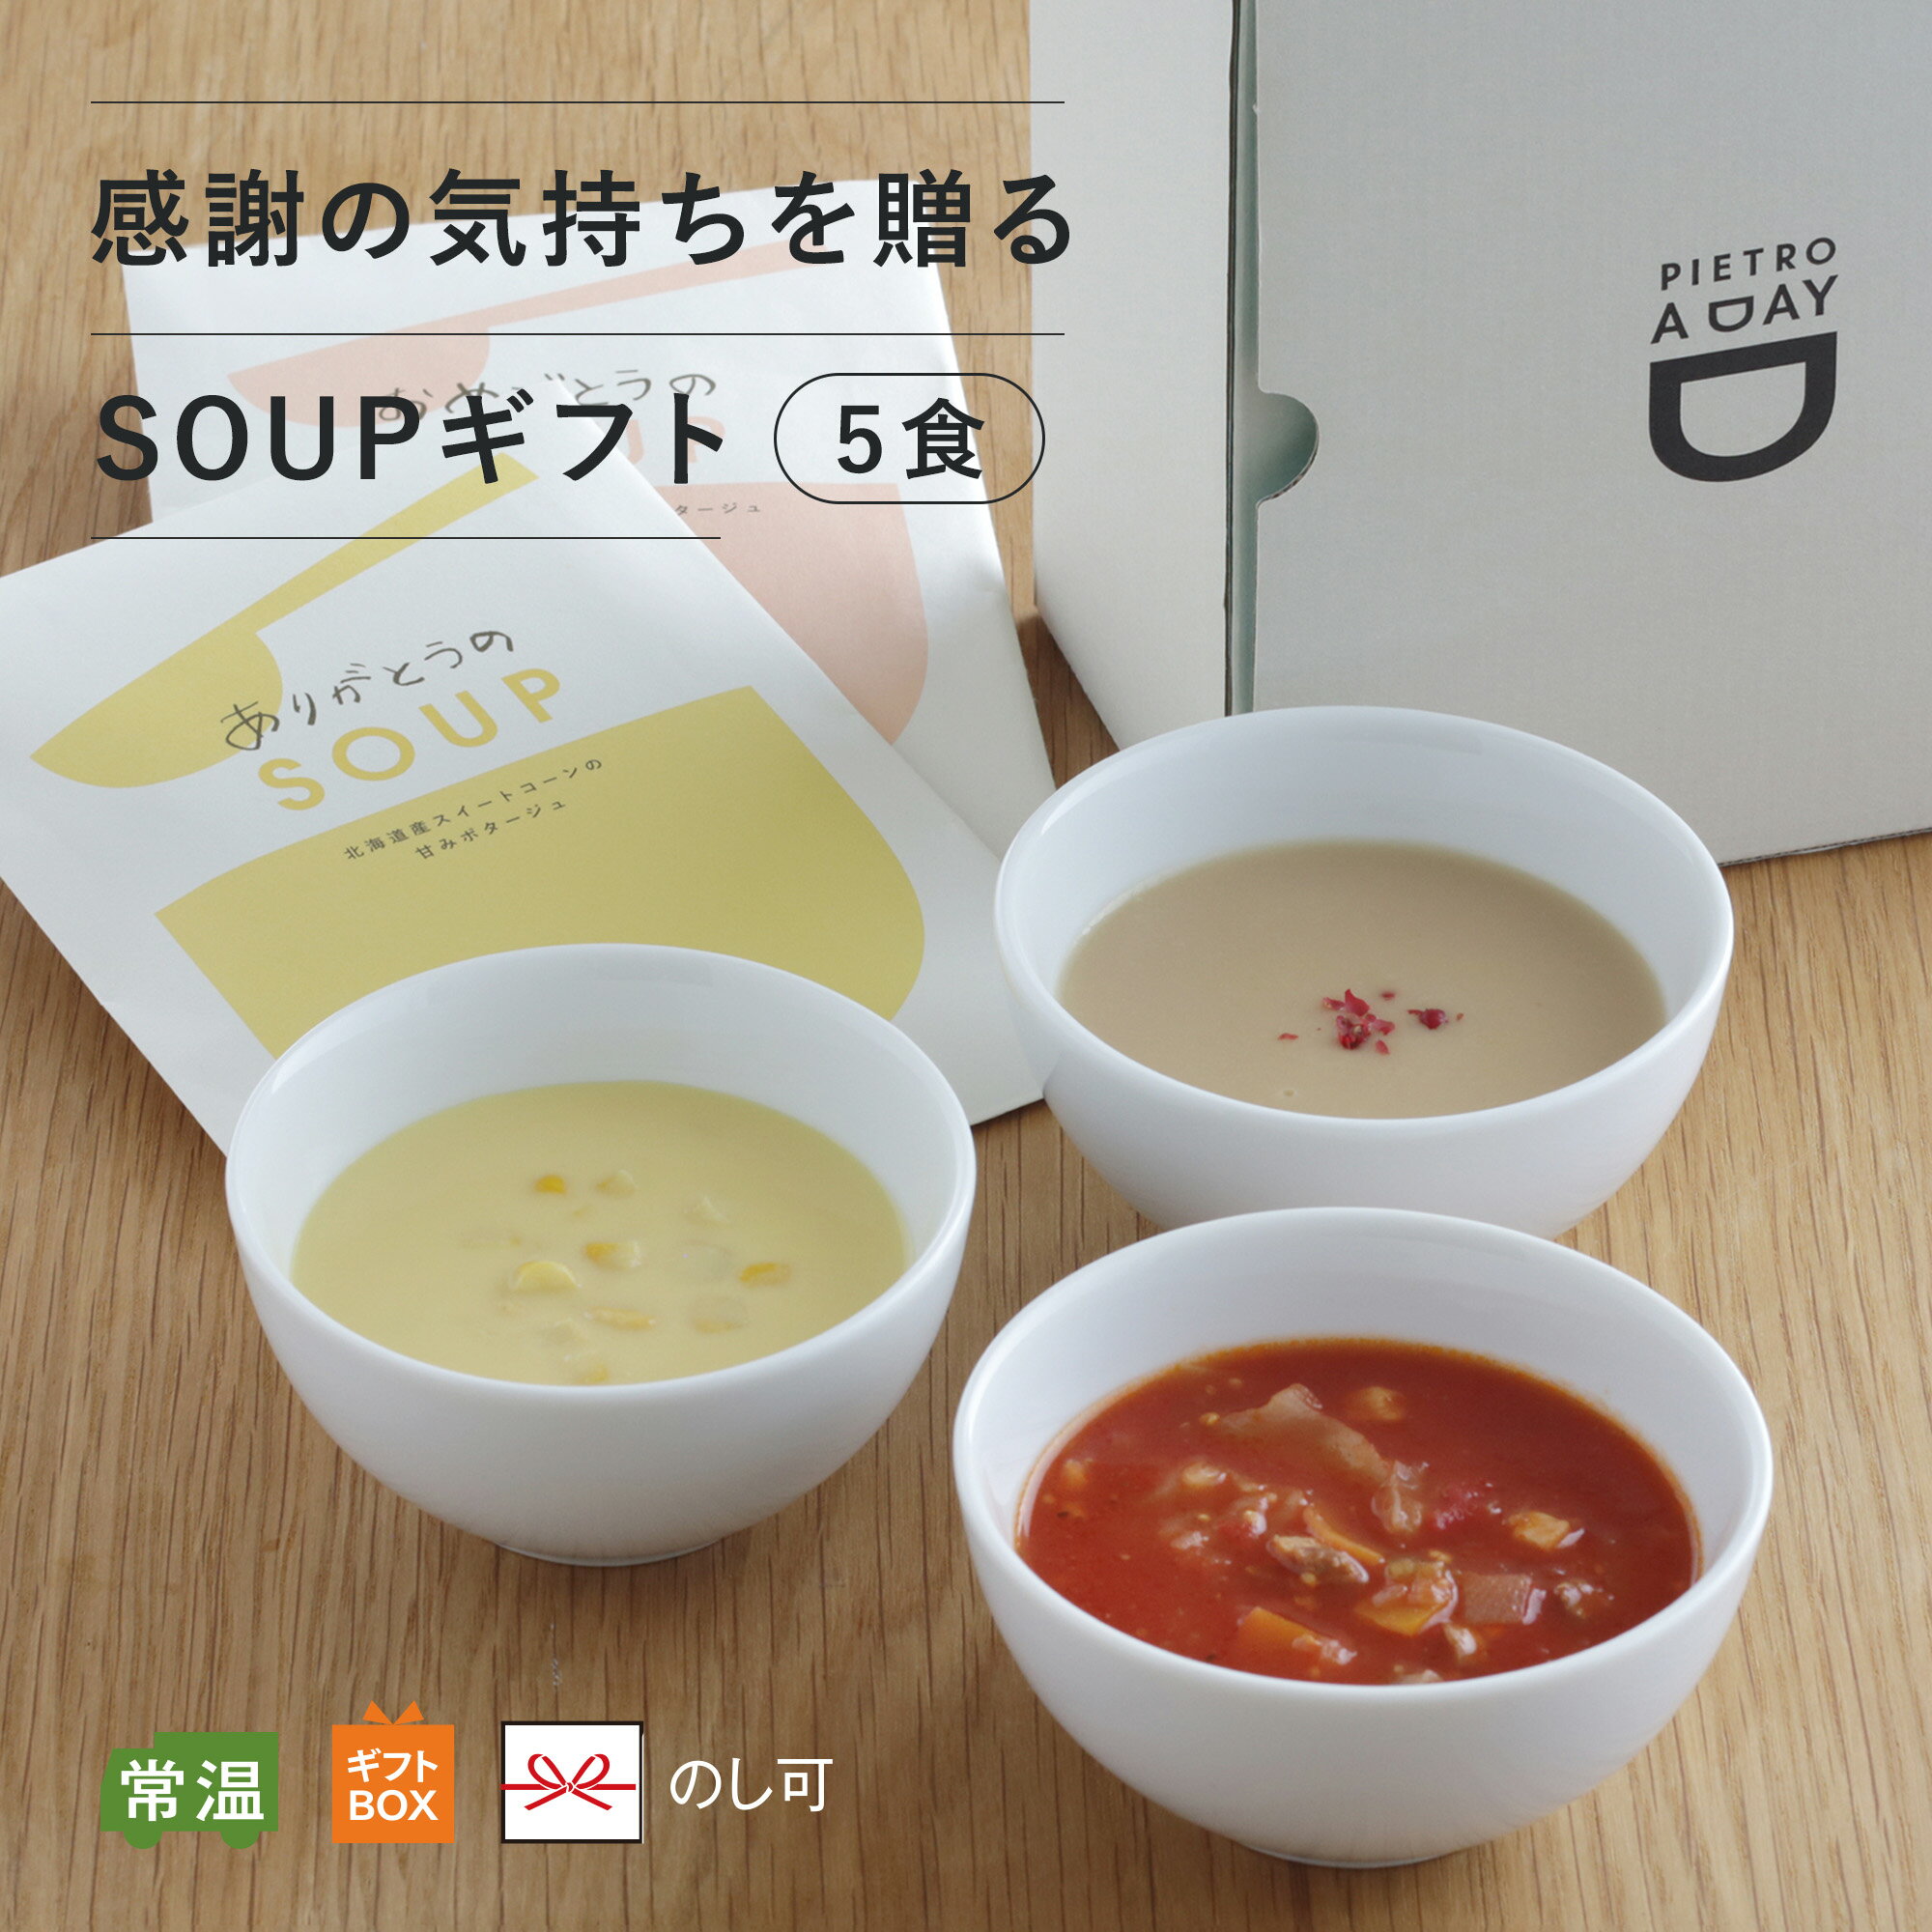 ピエトロ 感謝の気持ちを贈るスープギフト 5食 常温保存 箱入り ラッピング のし 包装 プチギフト ギフト スープギフト ギフト コーンスープ コーンポタージュ 野菜スープ カップスープ